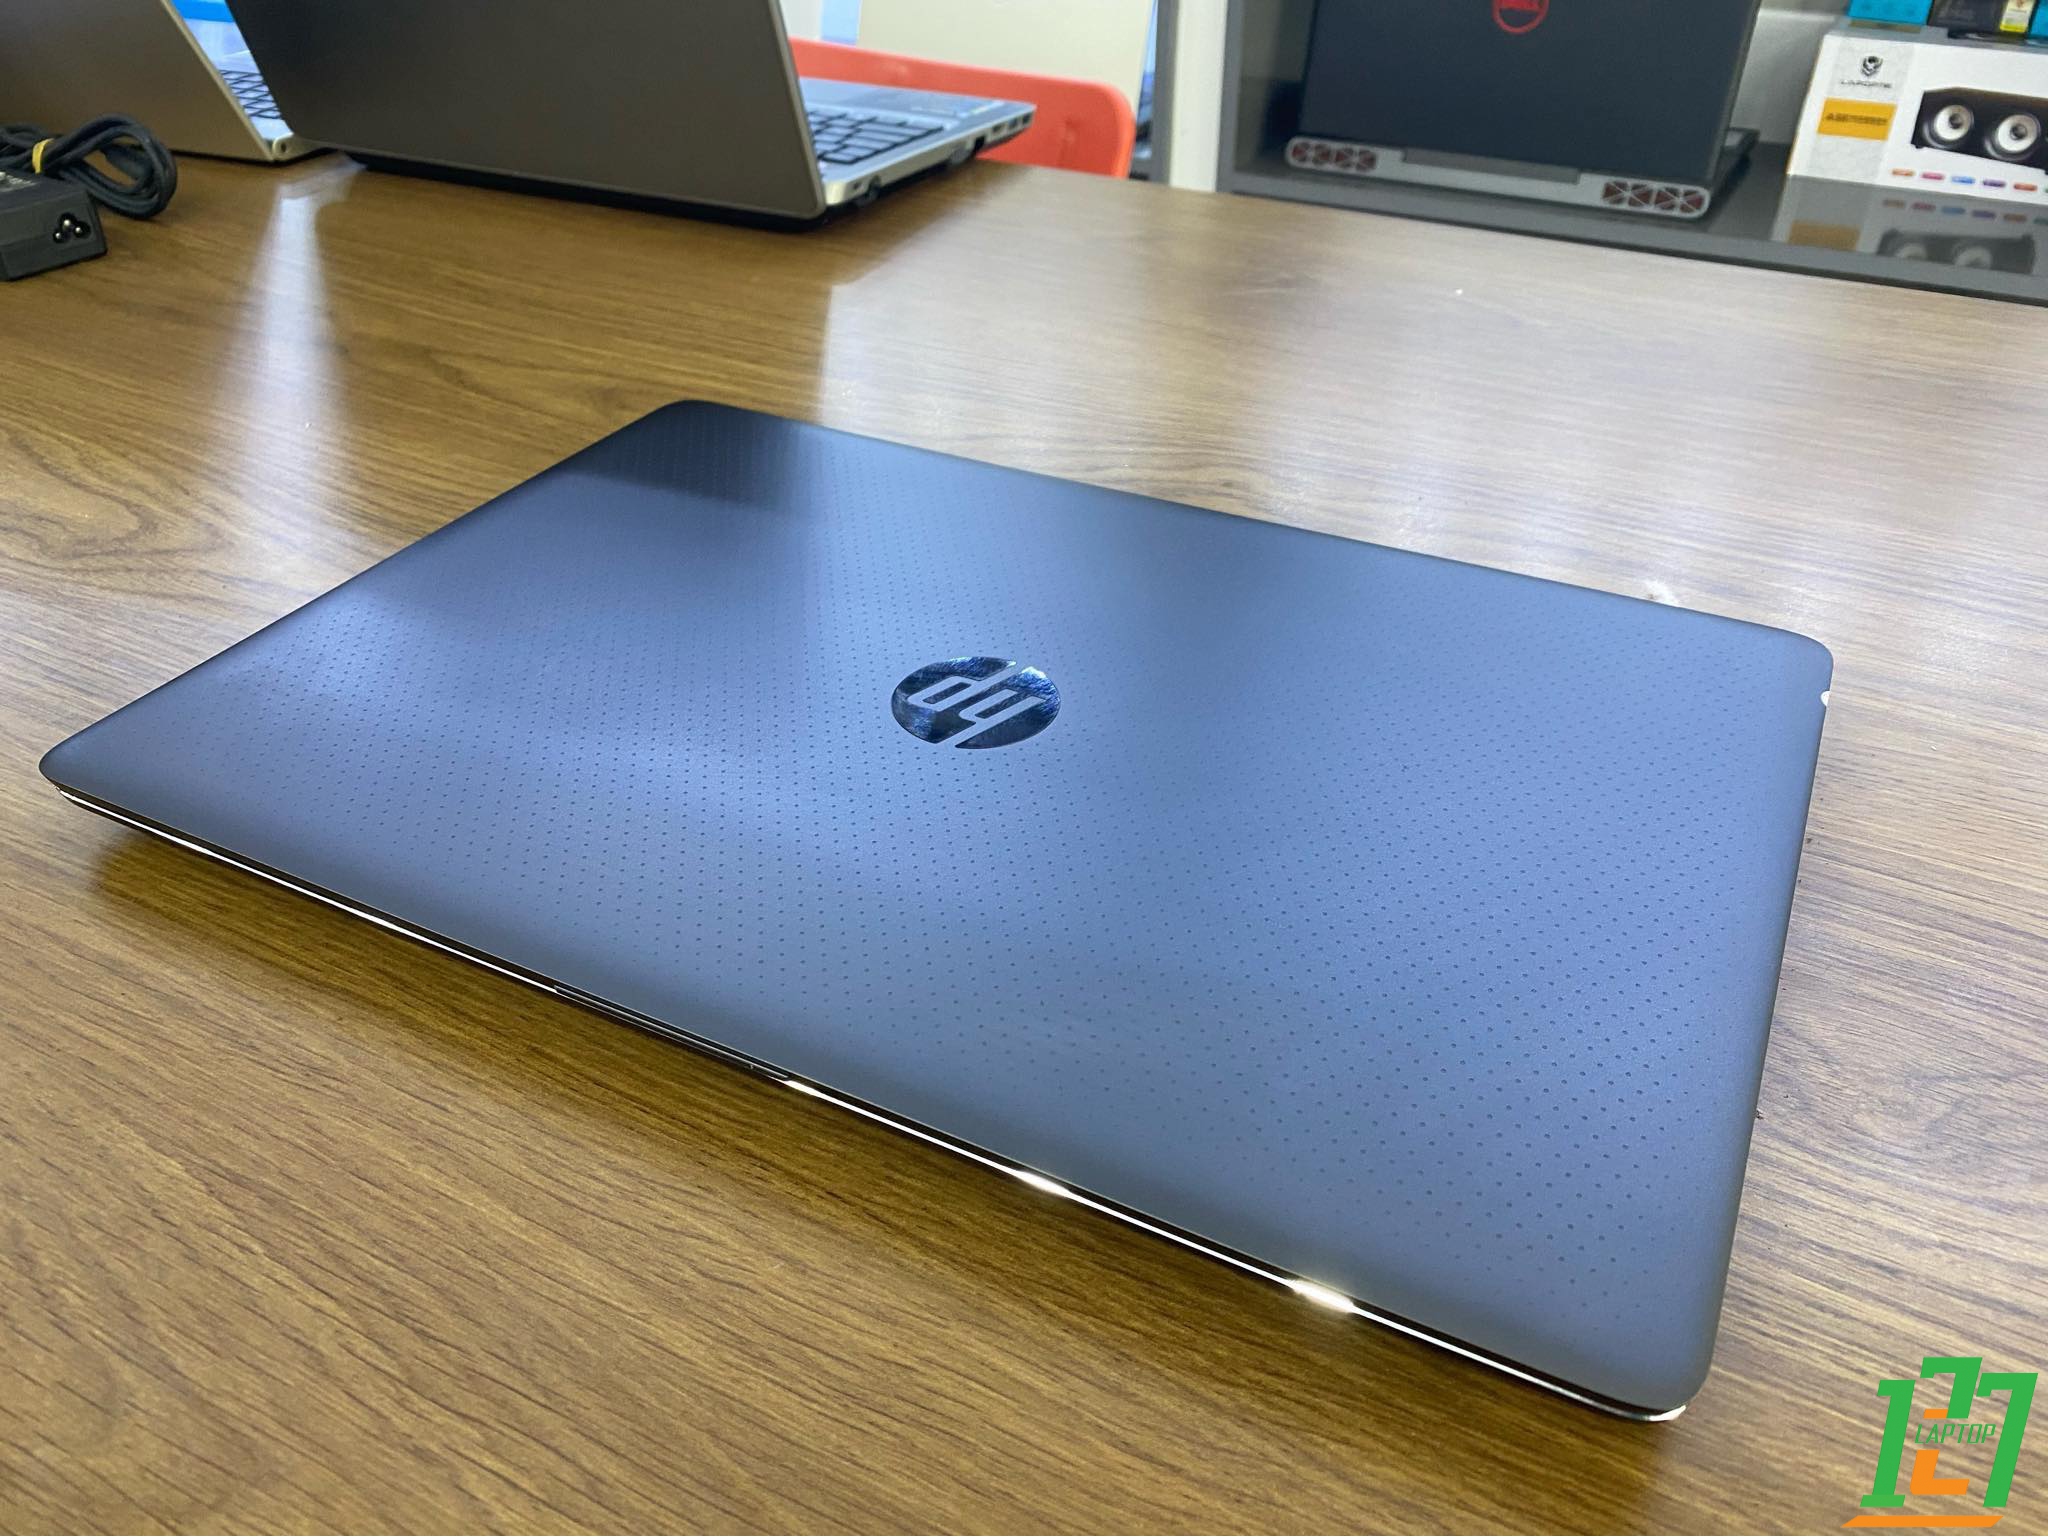  HP Zbook Studio 15 G3 -Laptop đồ họa cực khủng